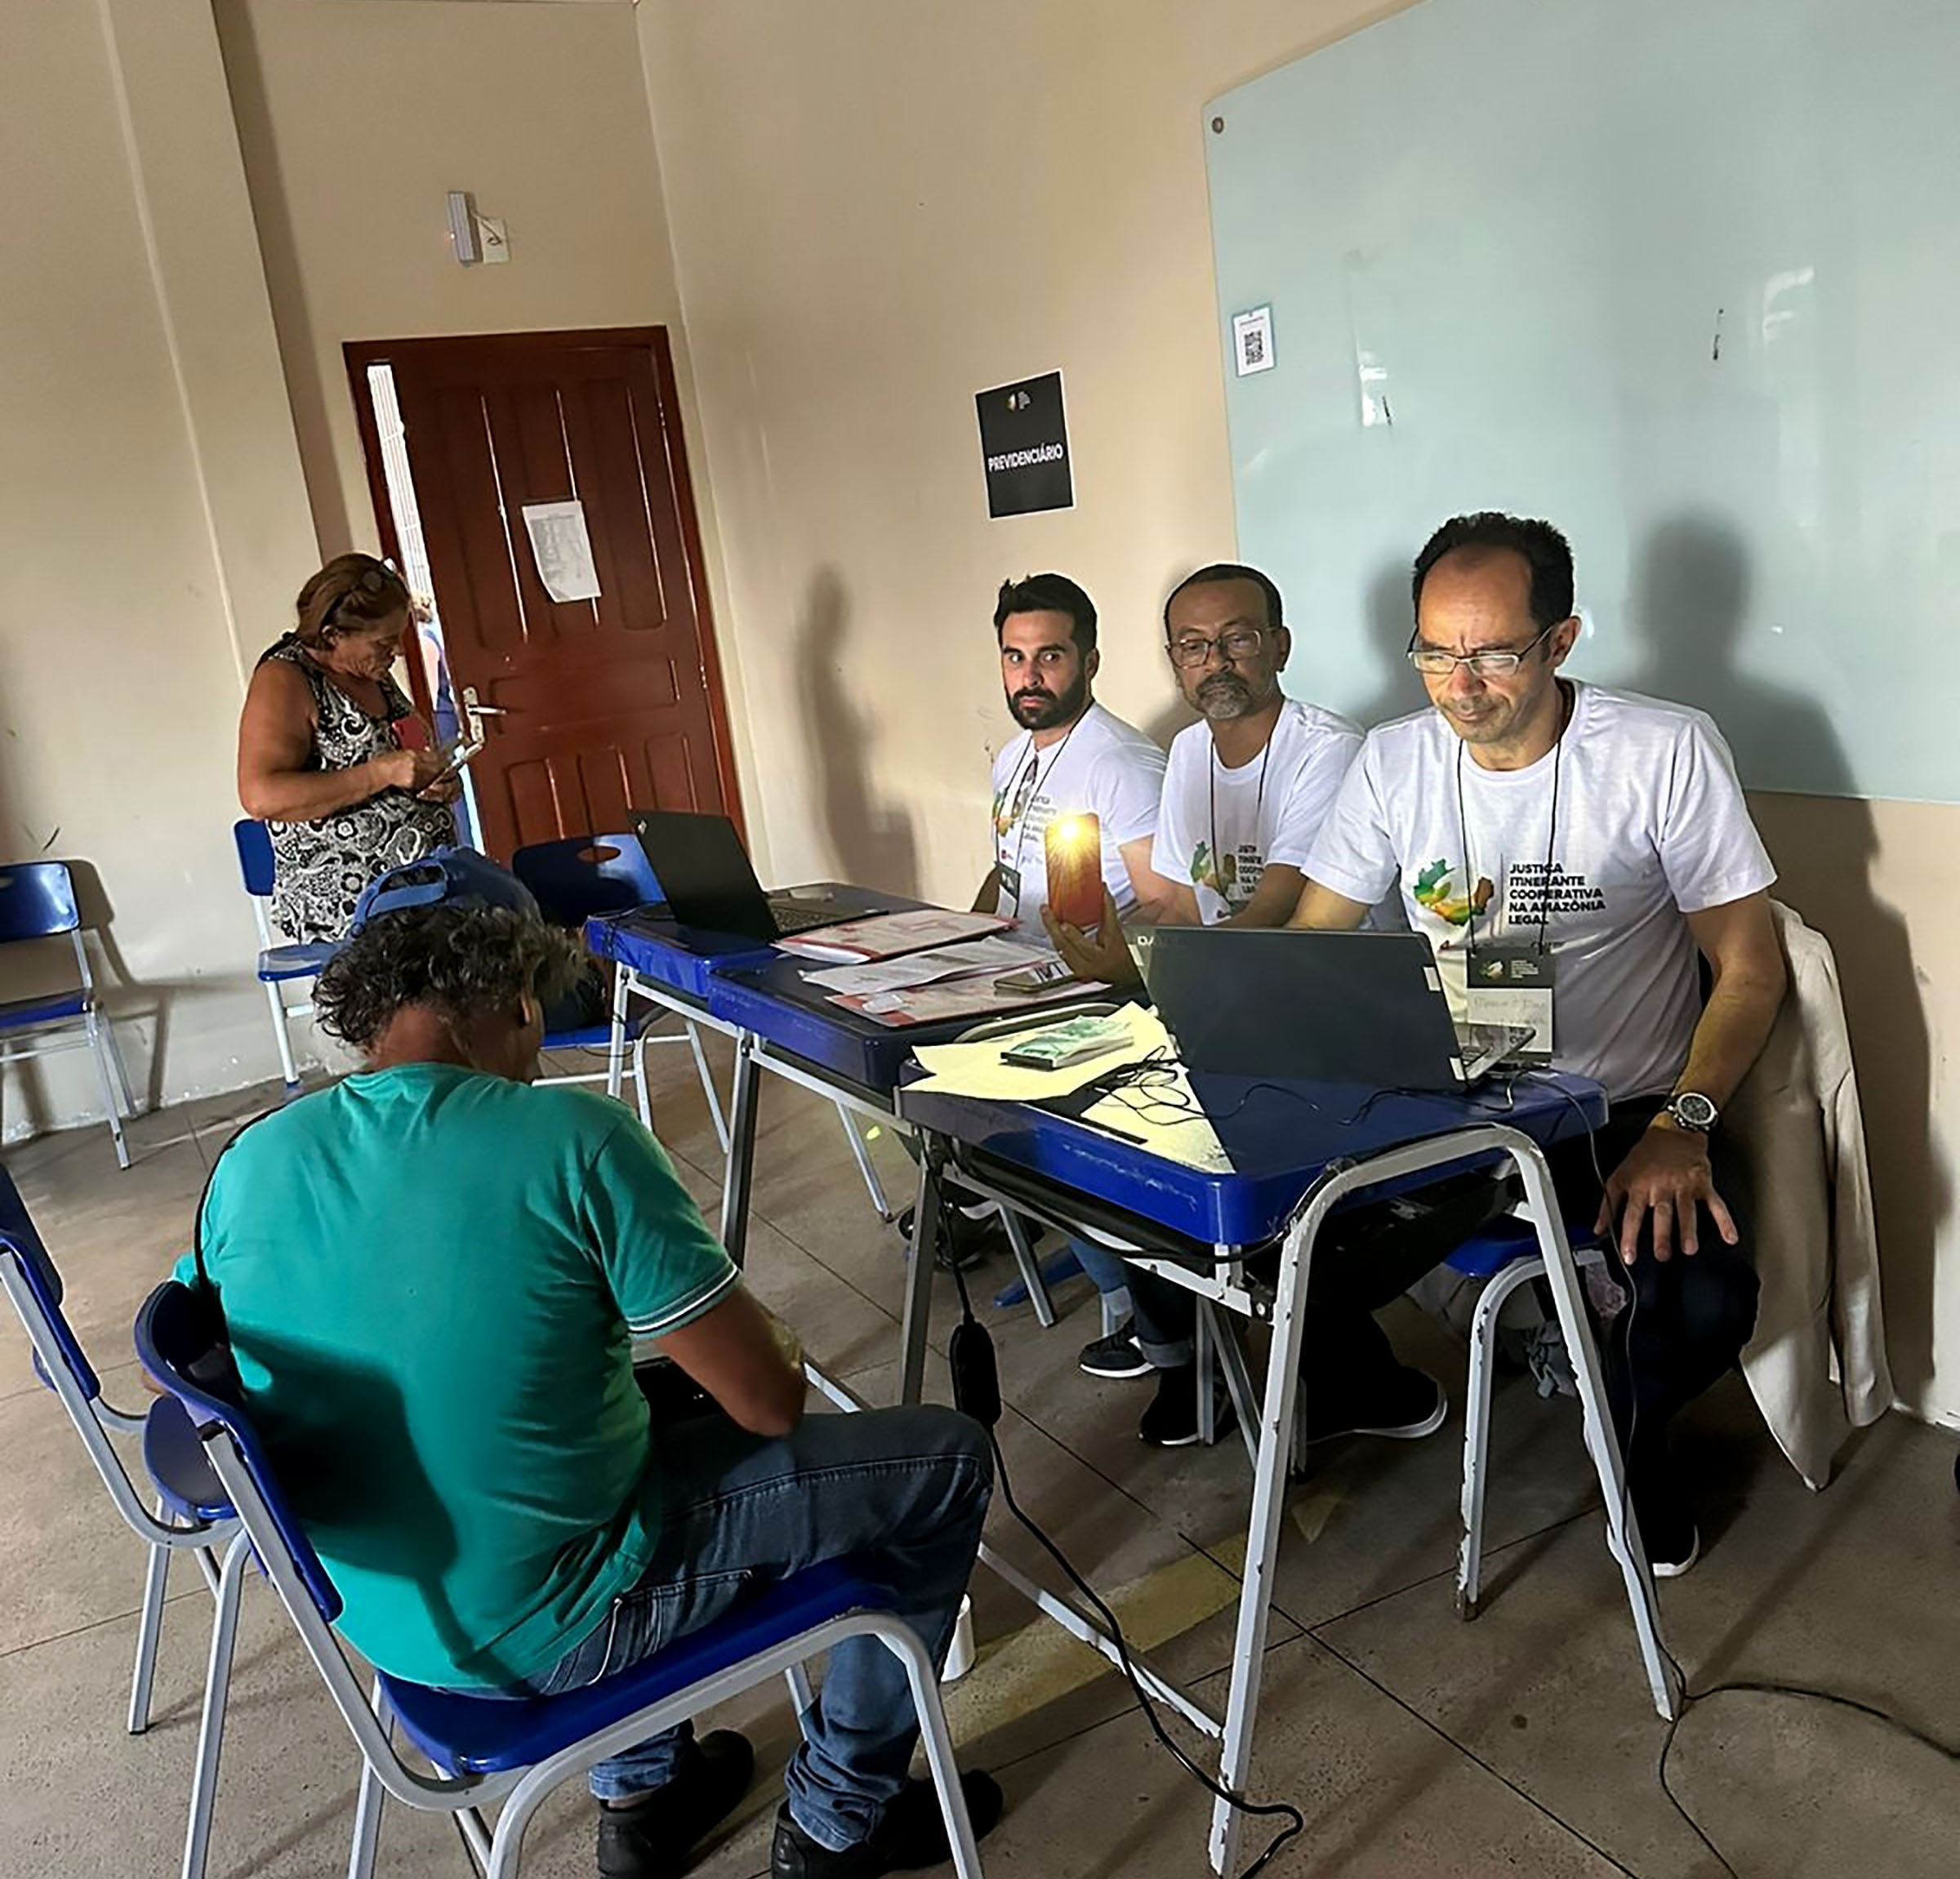 INSTITUCIONAL: Mais de 700 pessoas já foram beneficiadas pela Justiça Itinerante no Pará em três dias de atendimentos e prestação de serviços